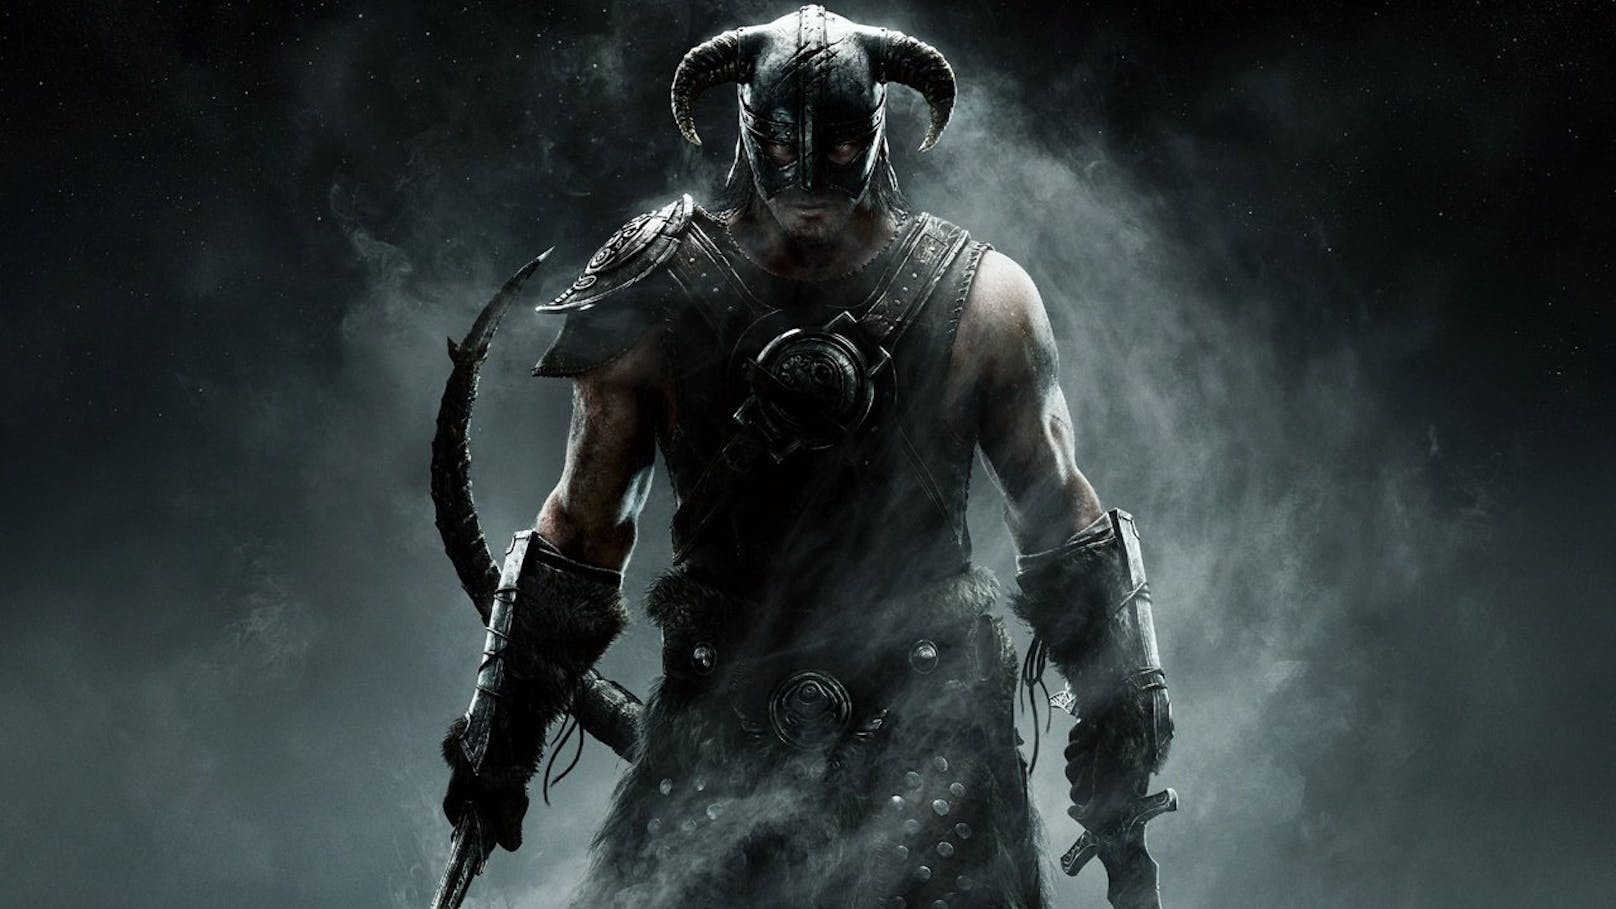 "Skyrim" erschien auf PC, PS3, PS4, Xbox 360, Xbox One, Nintendo Switch und weiteren Plattformen. Der Nachfolger, "The Elder Sxrolls VI", könnte exklusiver ausfallen.